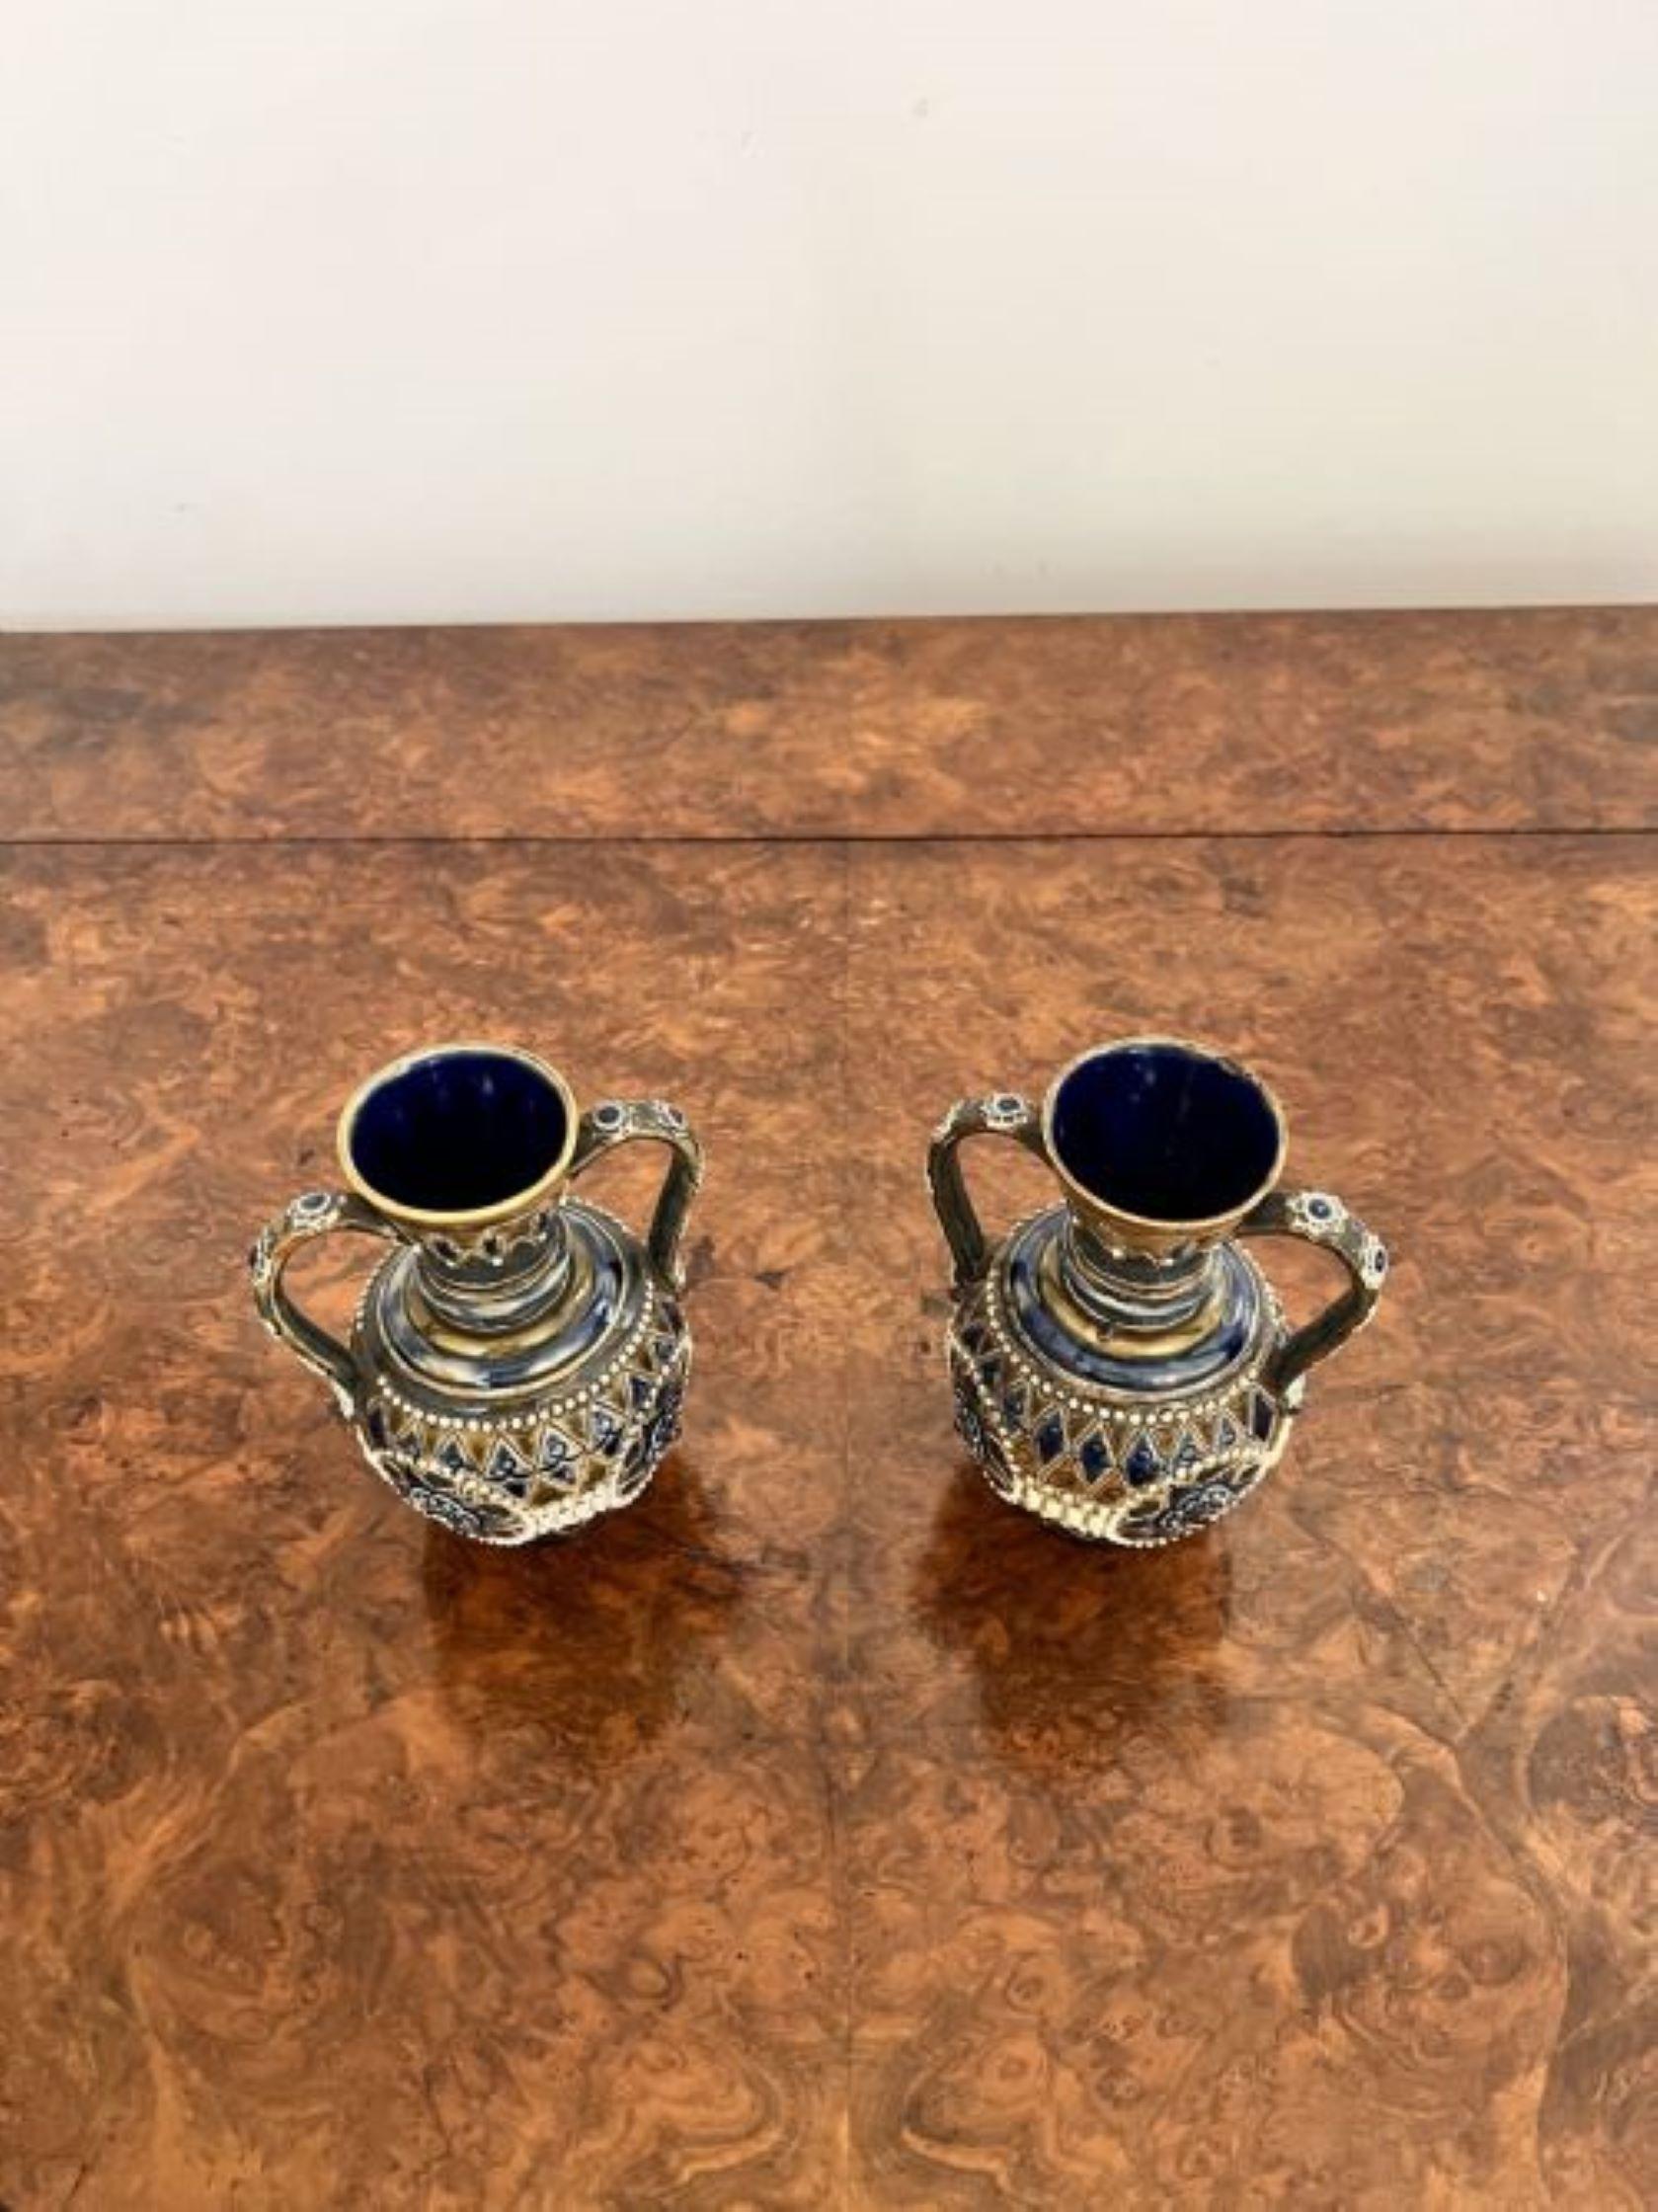 Feine Qualität Paar Qualität antiken viktorianischen Doulton Lambeth kleine Vasen mit einer Qualität Paar antiken viktorianischen Doulton Lambeth kleine Vasen mit fantastischen Dekoration in schönen grünen, blauen und braunen und weißen Farben, mit